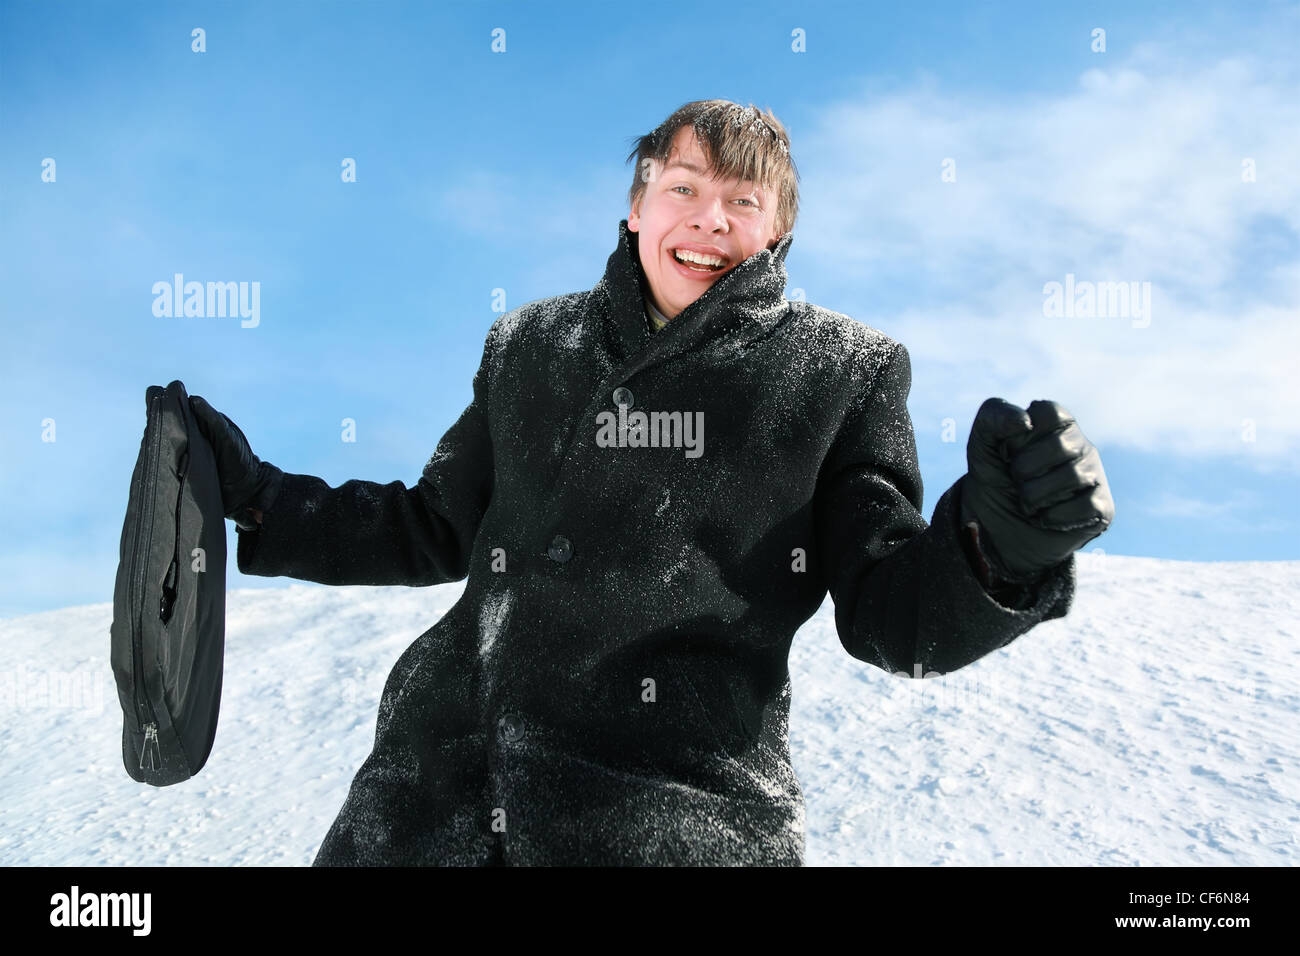 Mann mit kurz-Case Wintertag im Schnee steht und freut sich Stockfoto